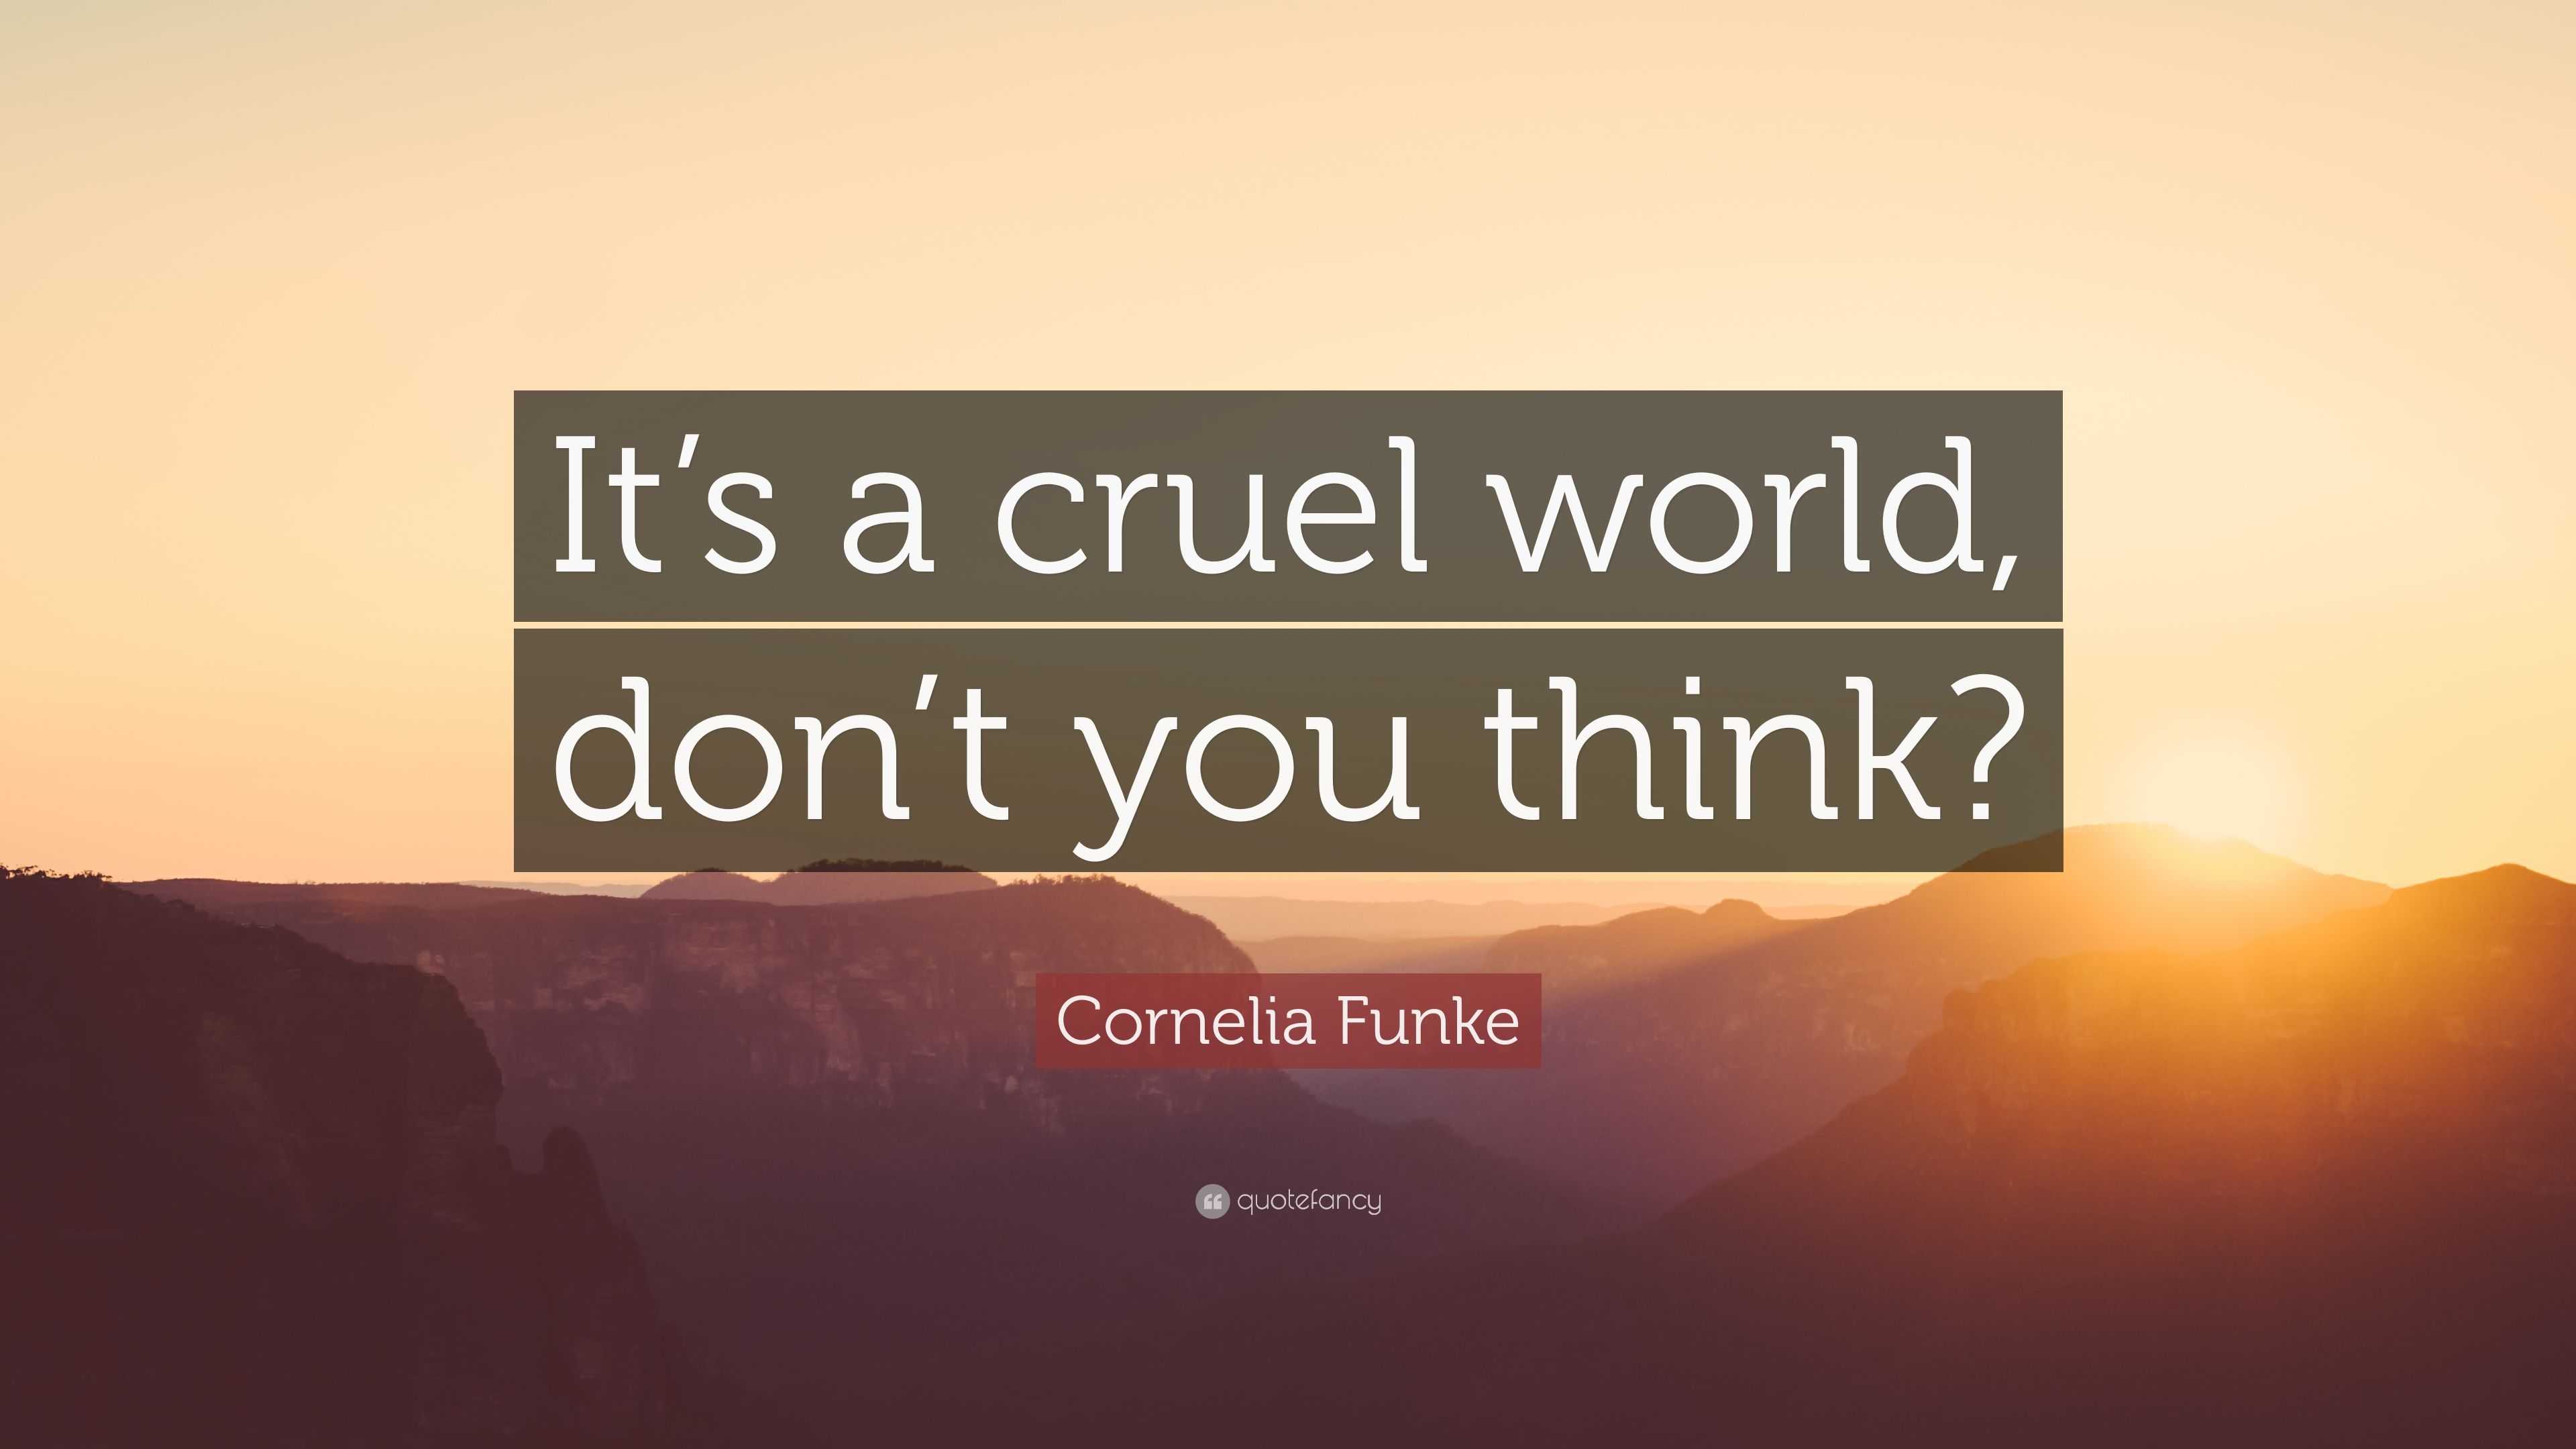 Cornelia Funke Quote “It’s a cruel world, don’t you think?”